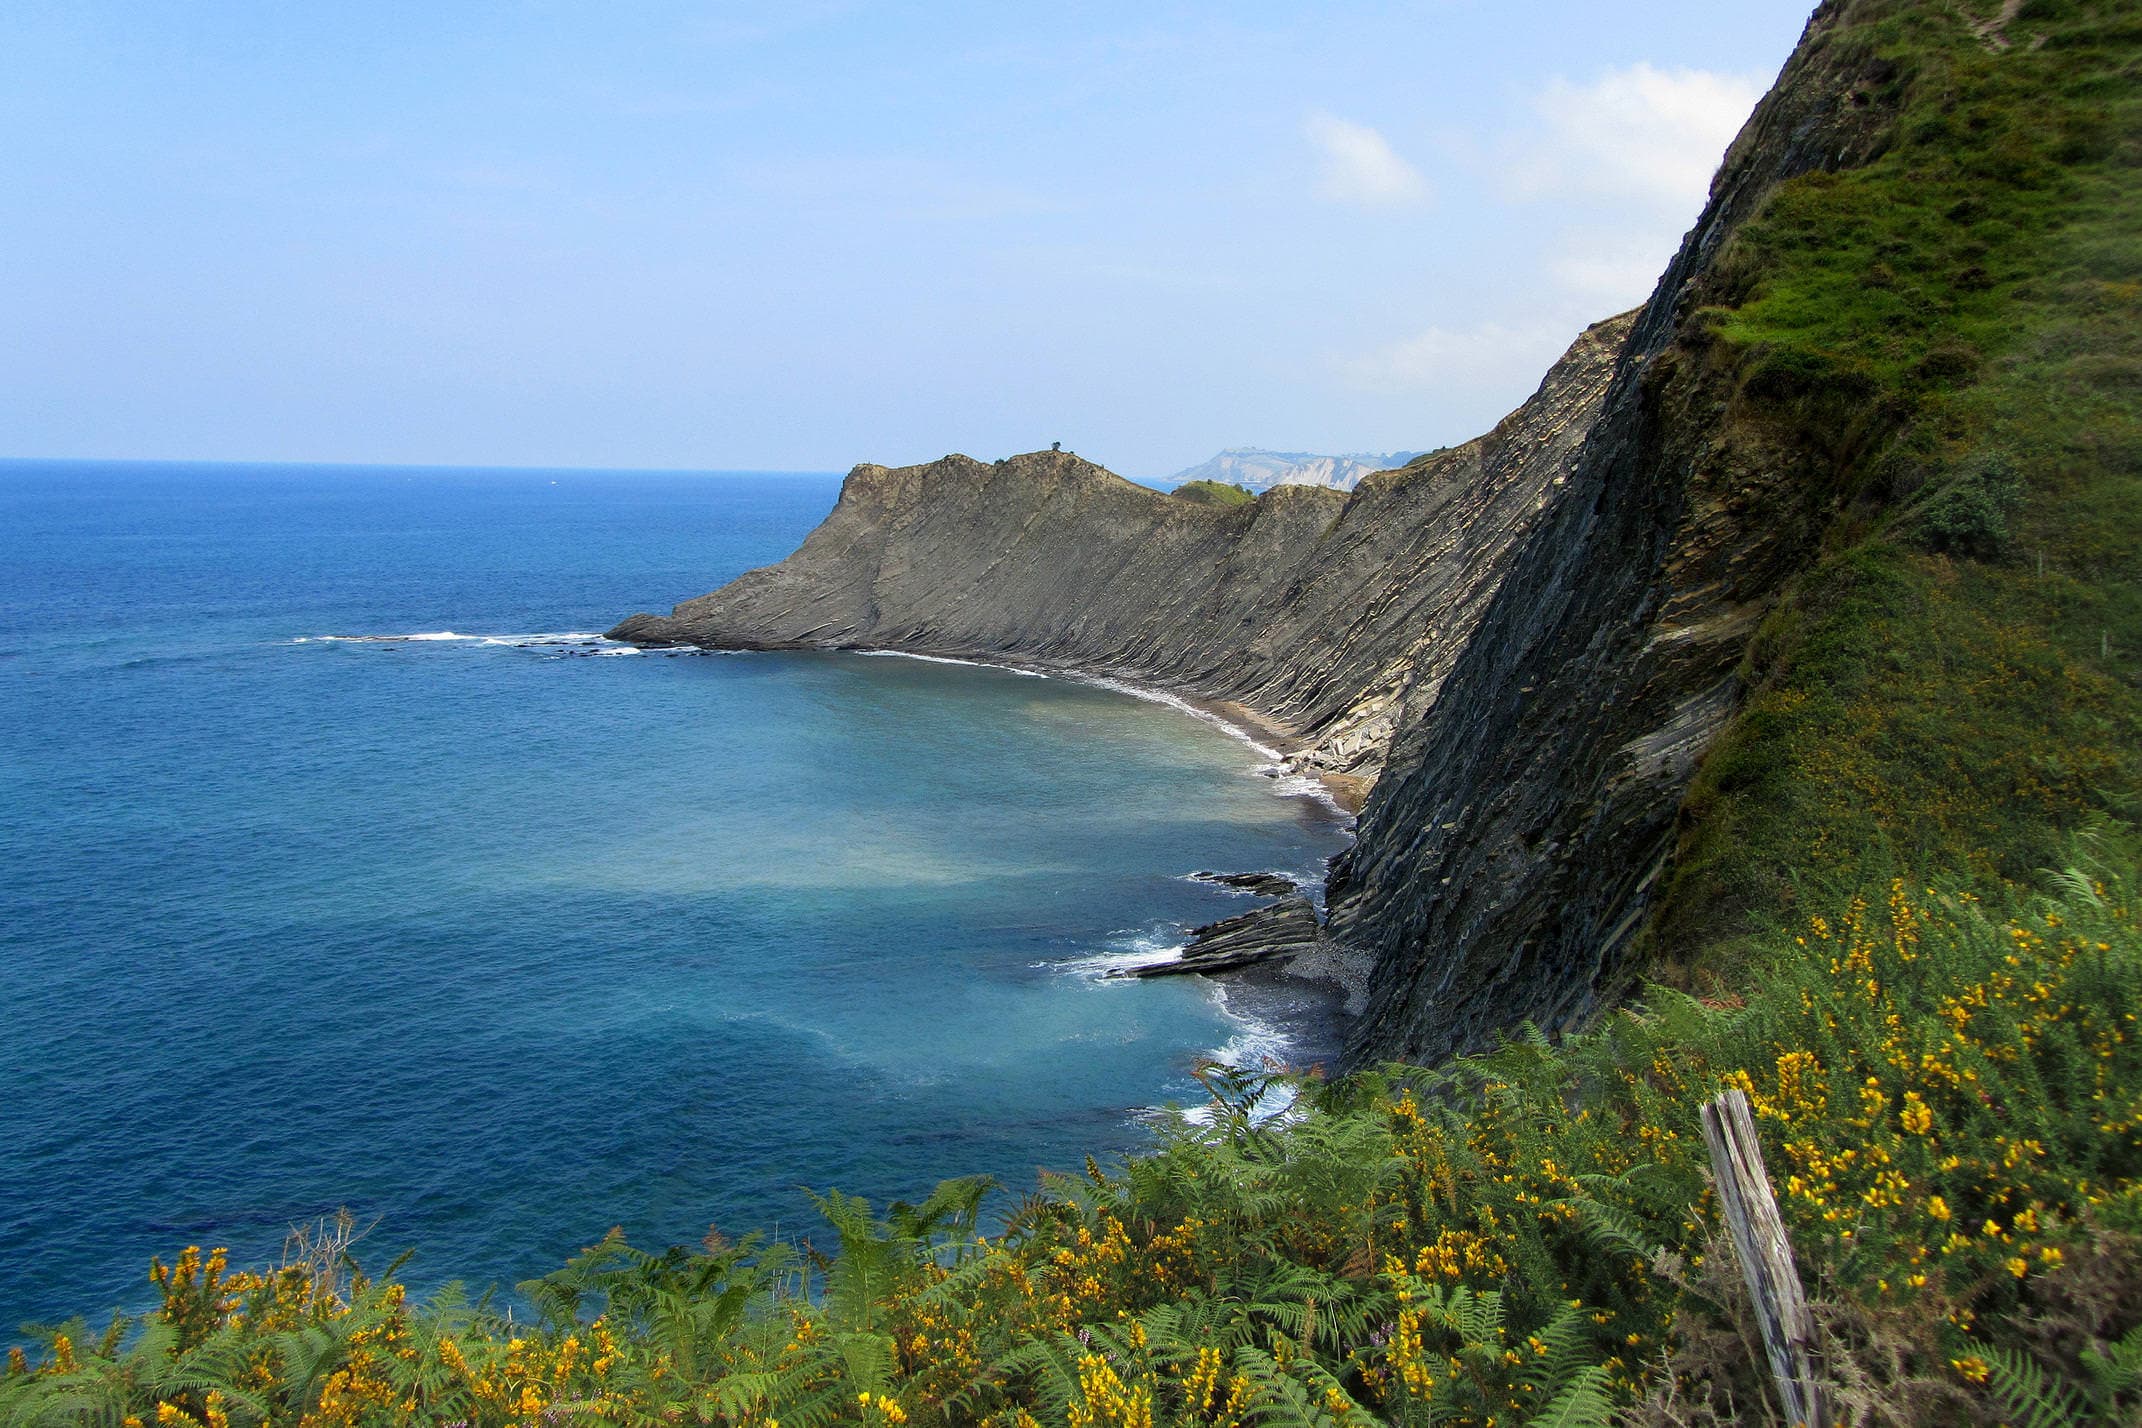 Spain basque inn to inn camino del norte zumaia cliffs 4